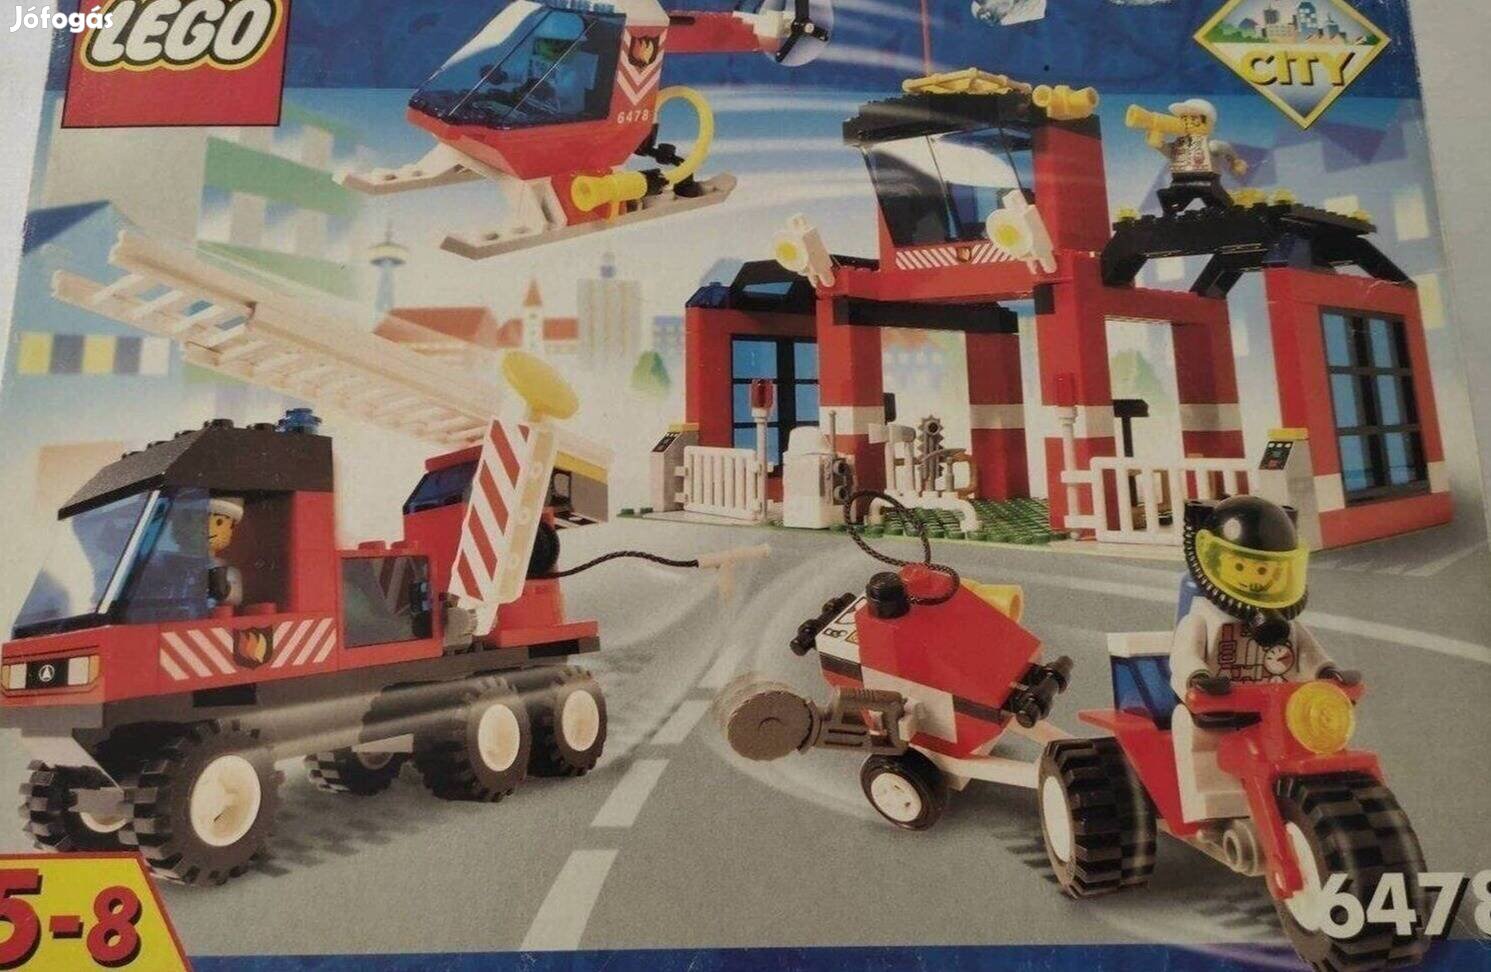 Lego city fire - tűzoltó állomás 6478